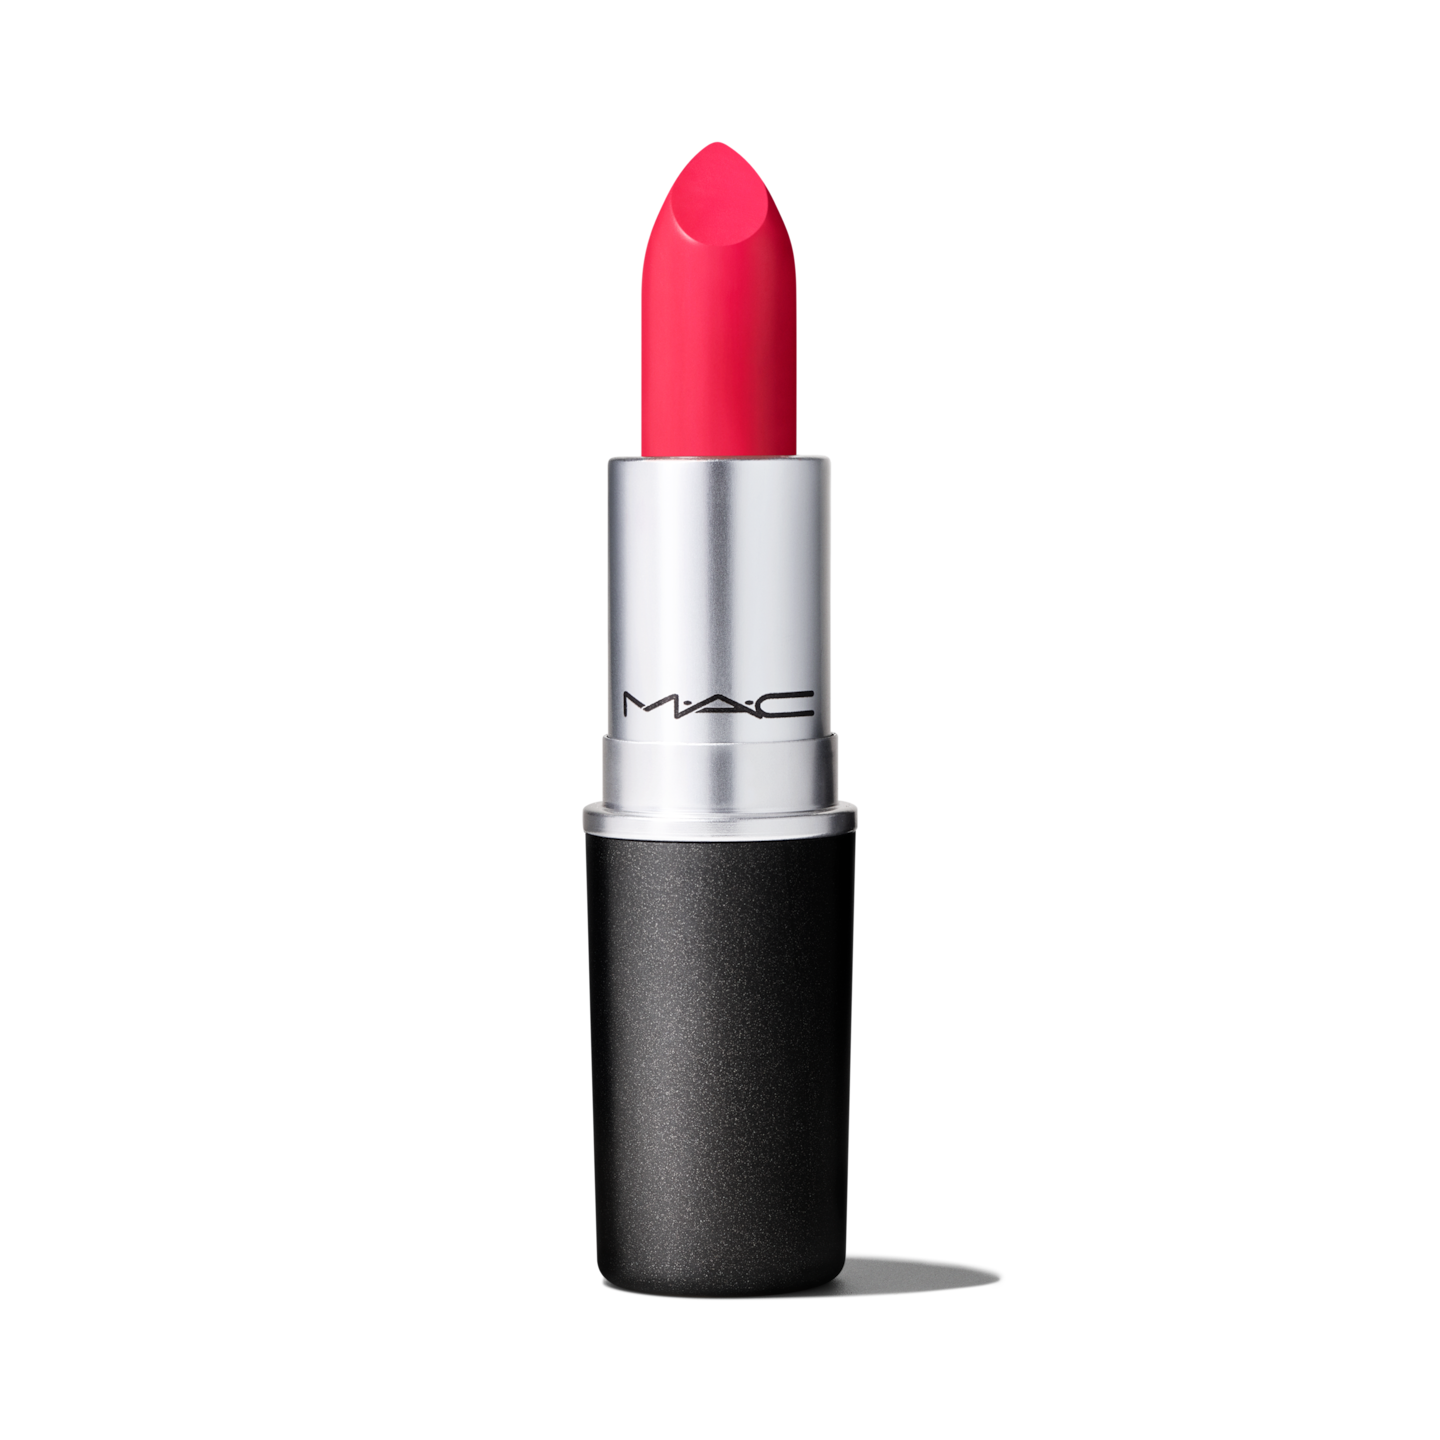 mac lipstick flat out fabulous